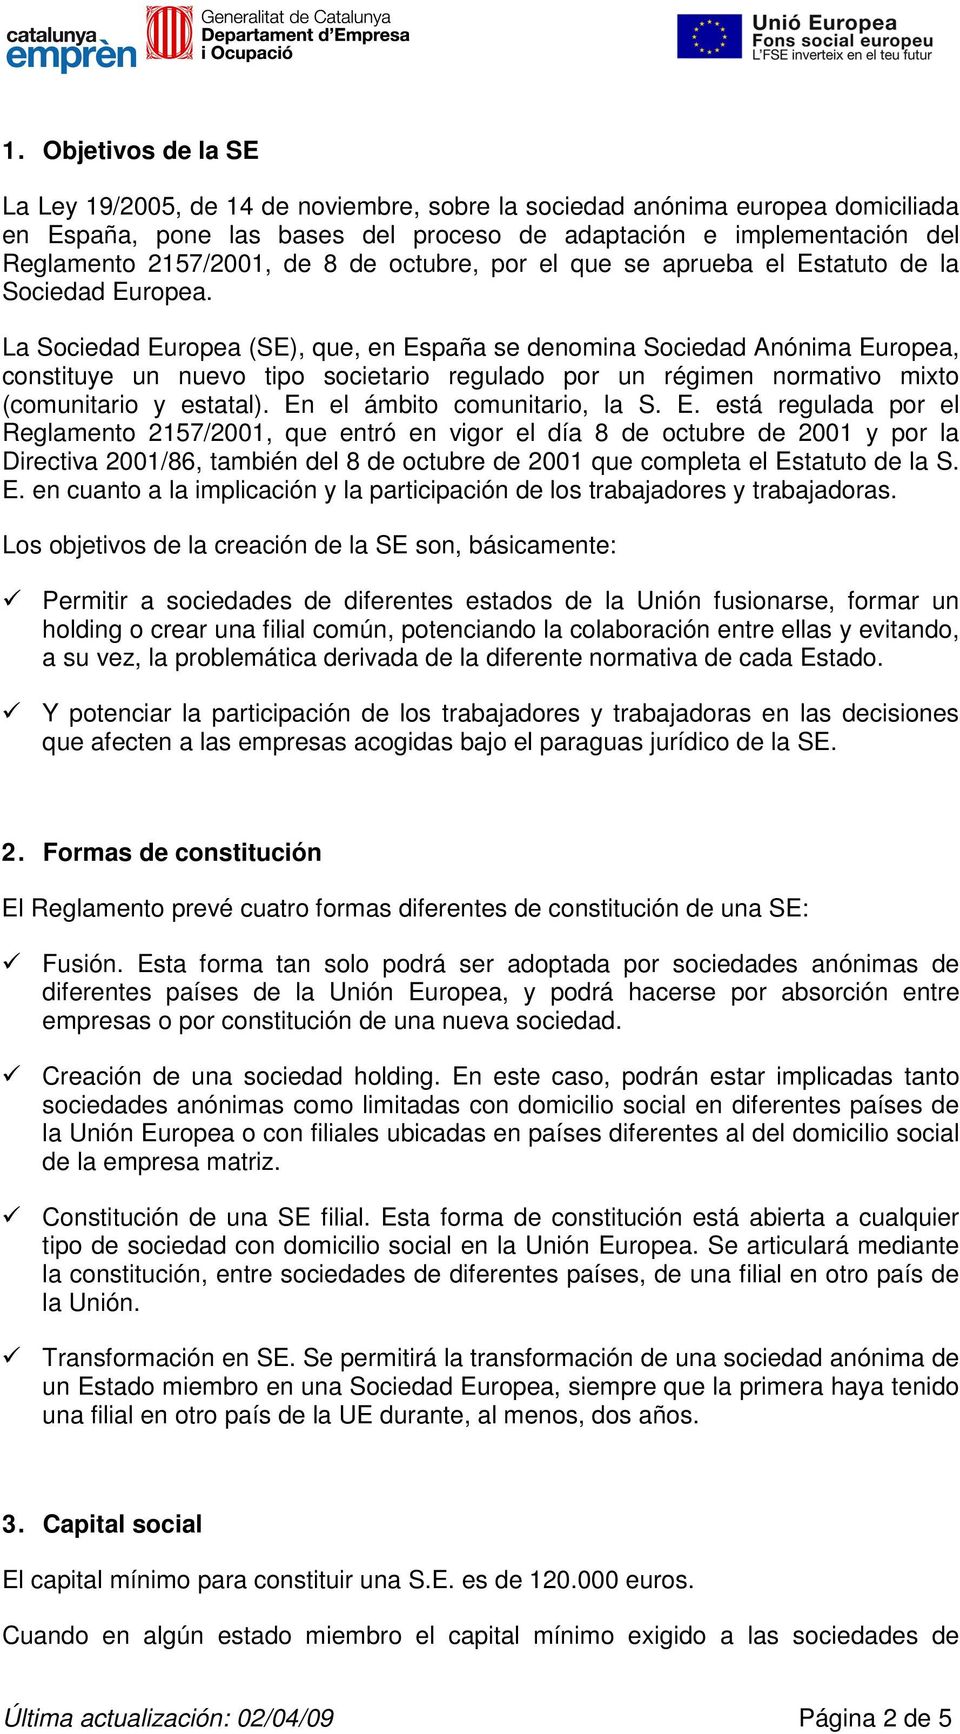 La Sociedad Europea (SE), que, en España se denomina Sociedad Anónima Europea, constituye un nuevo tipo societario regulado por un régimen normativo mixto (comunitario y estatal).